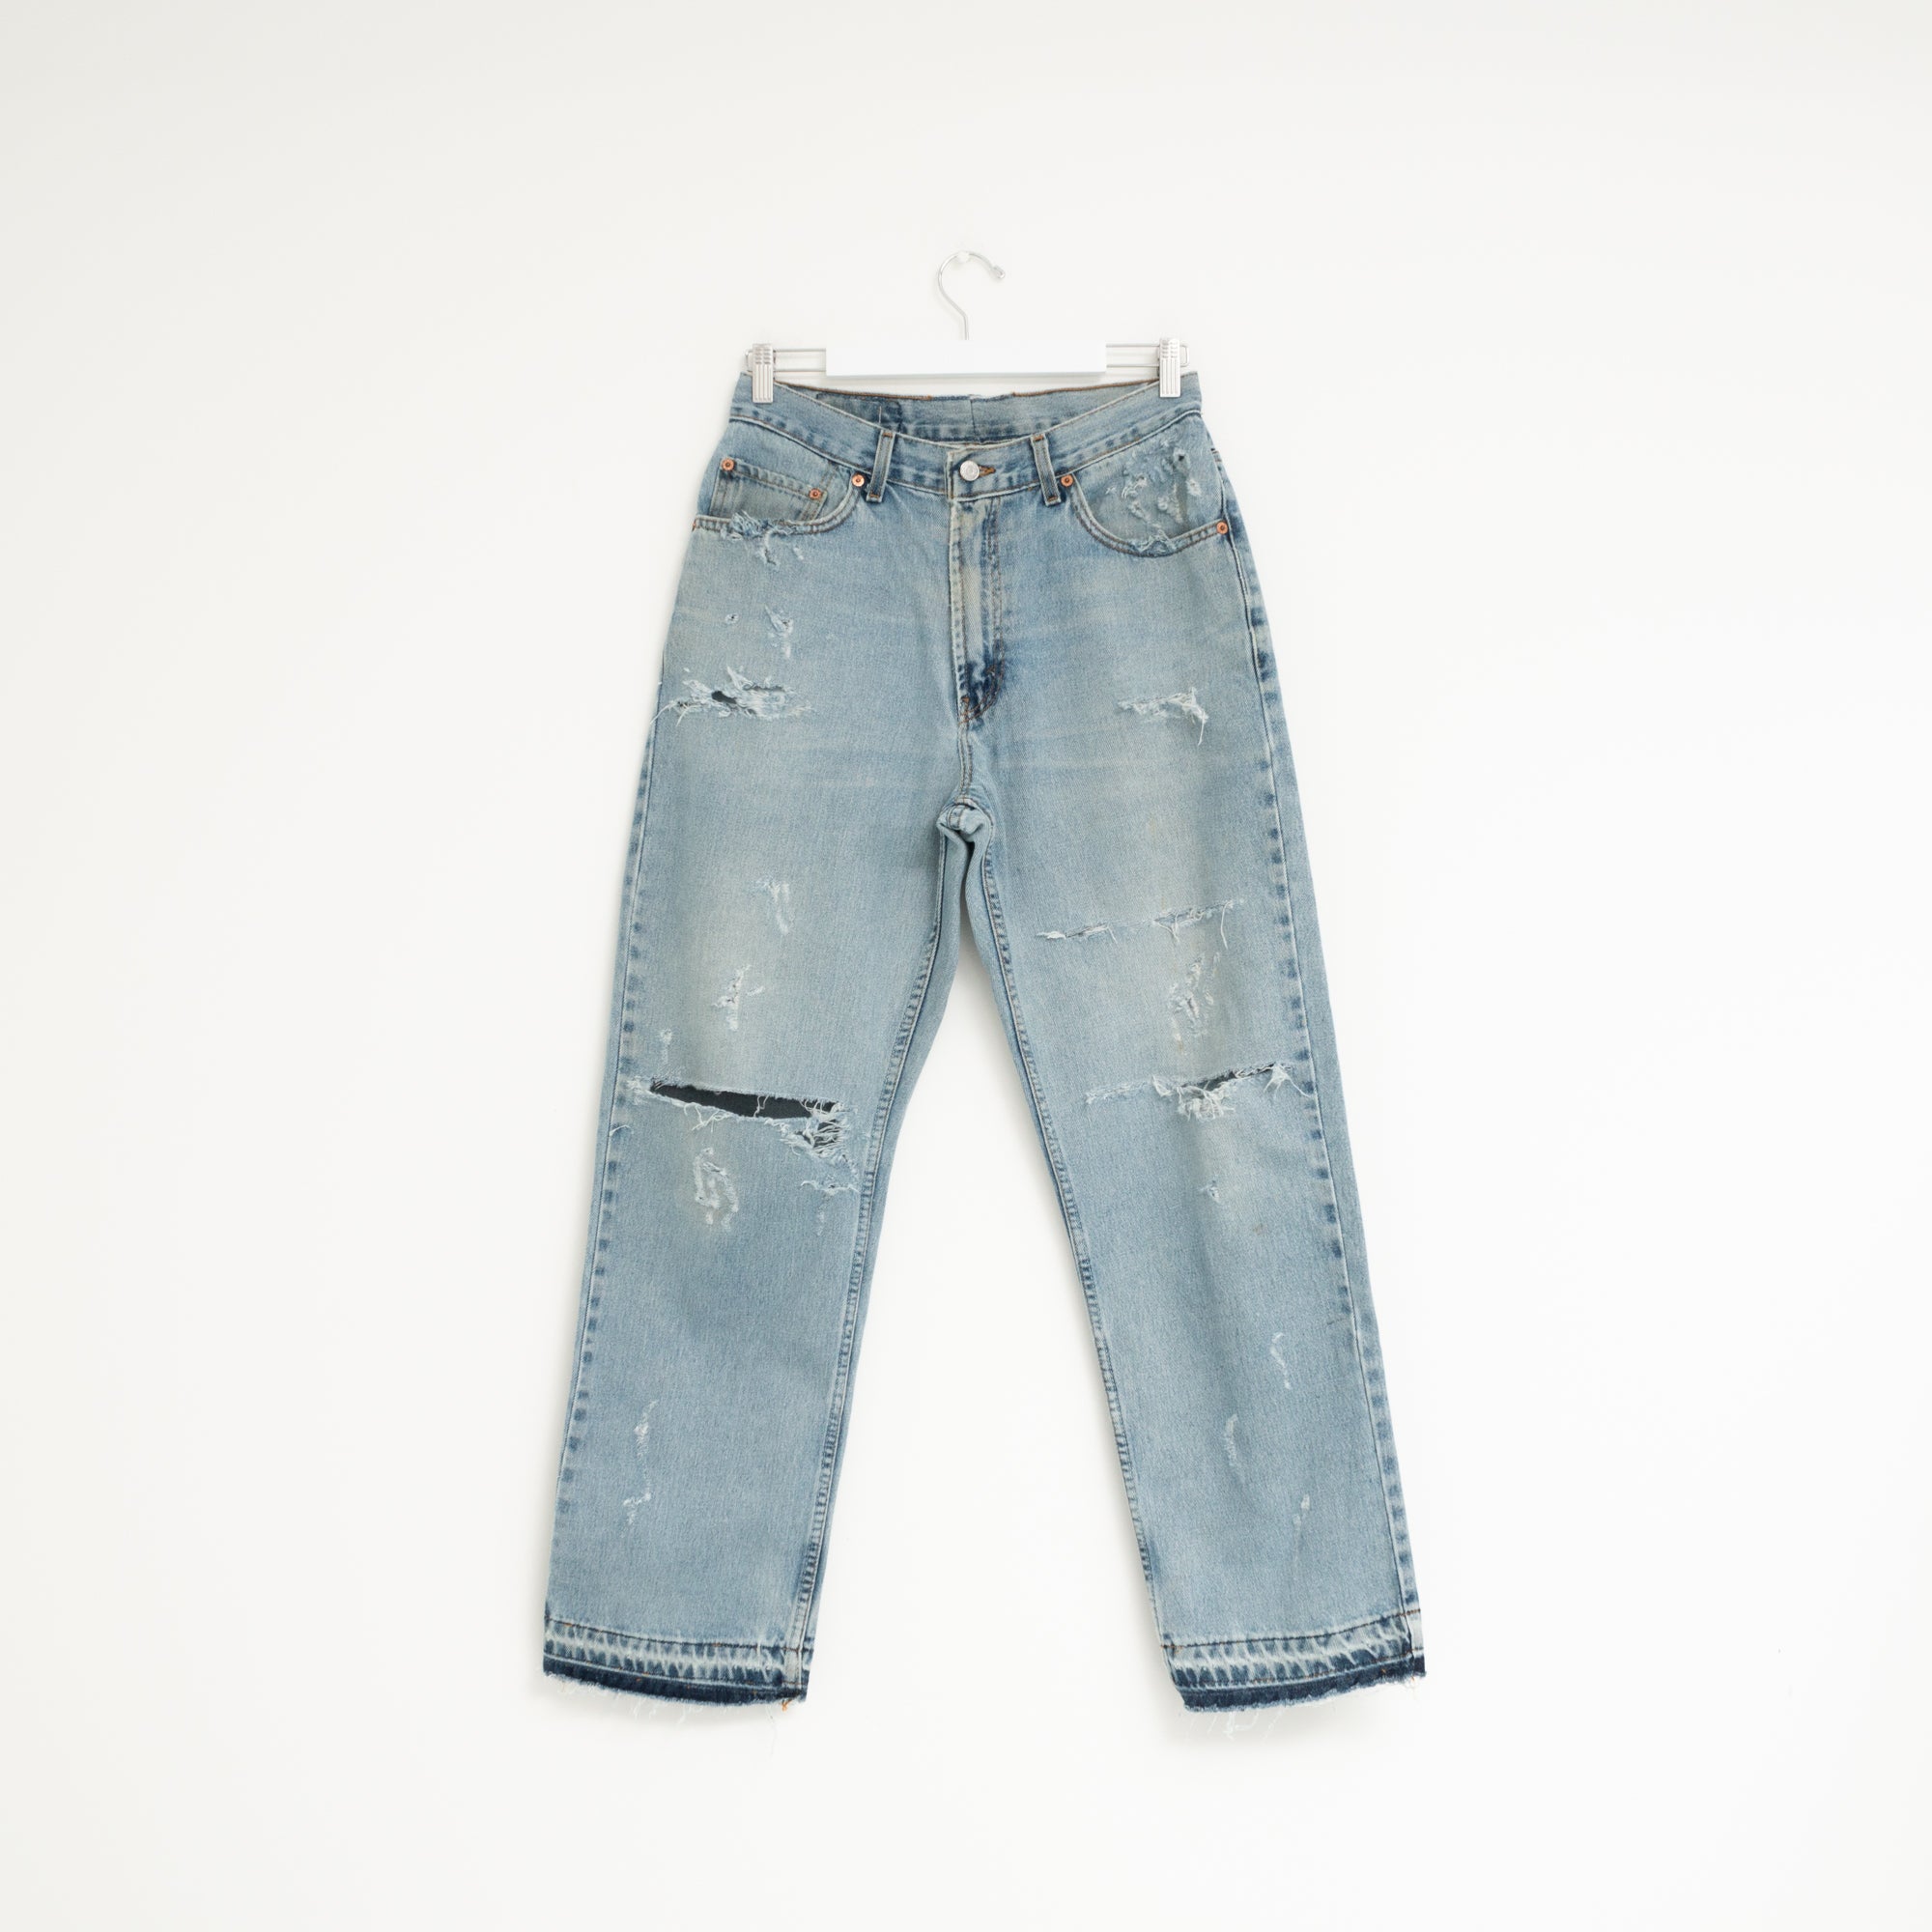 "DISTRESSED" Jeans W31 L31